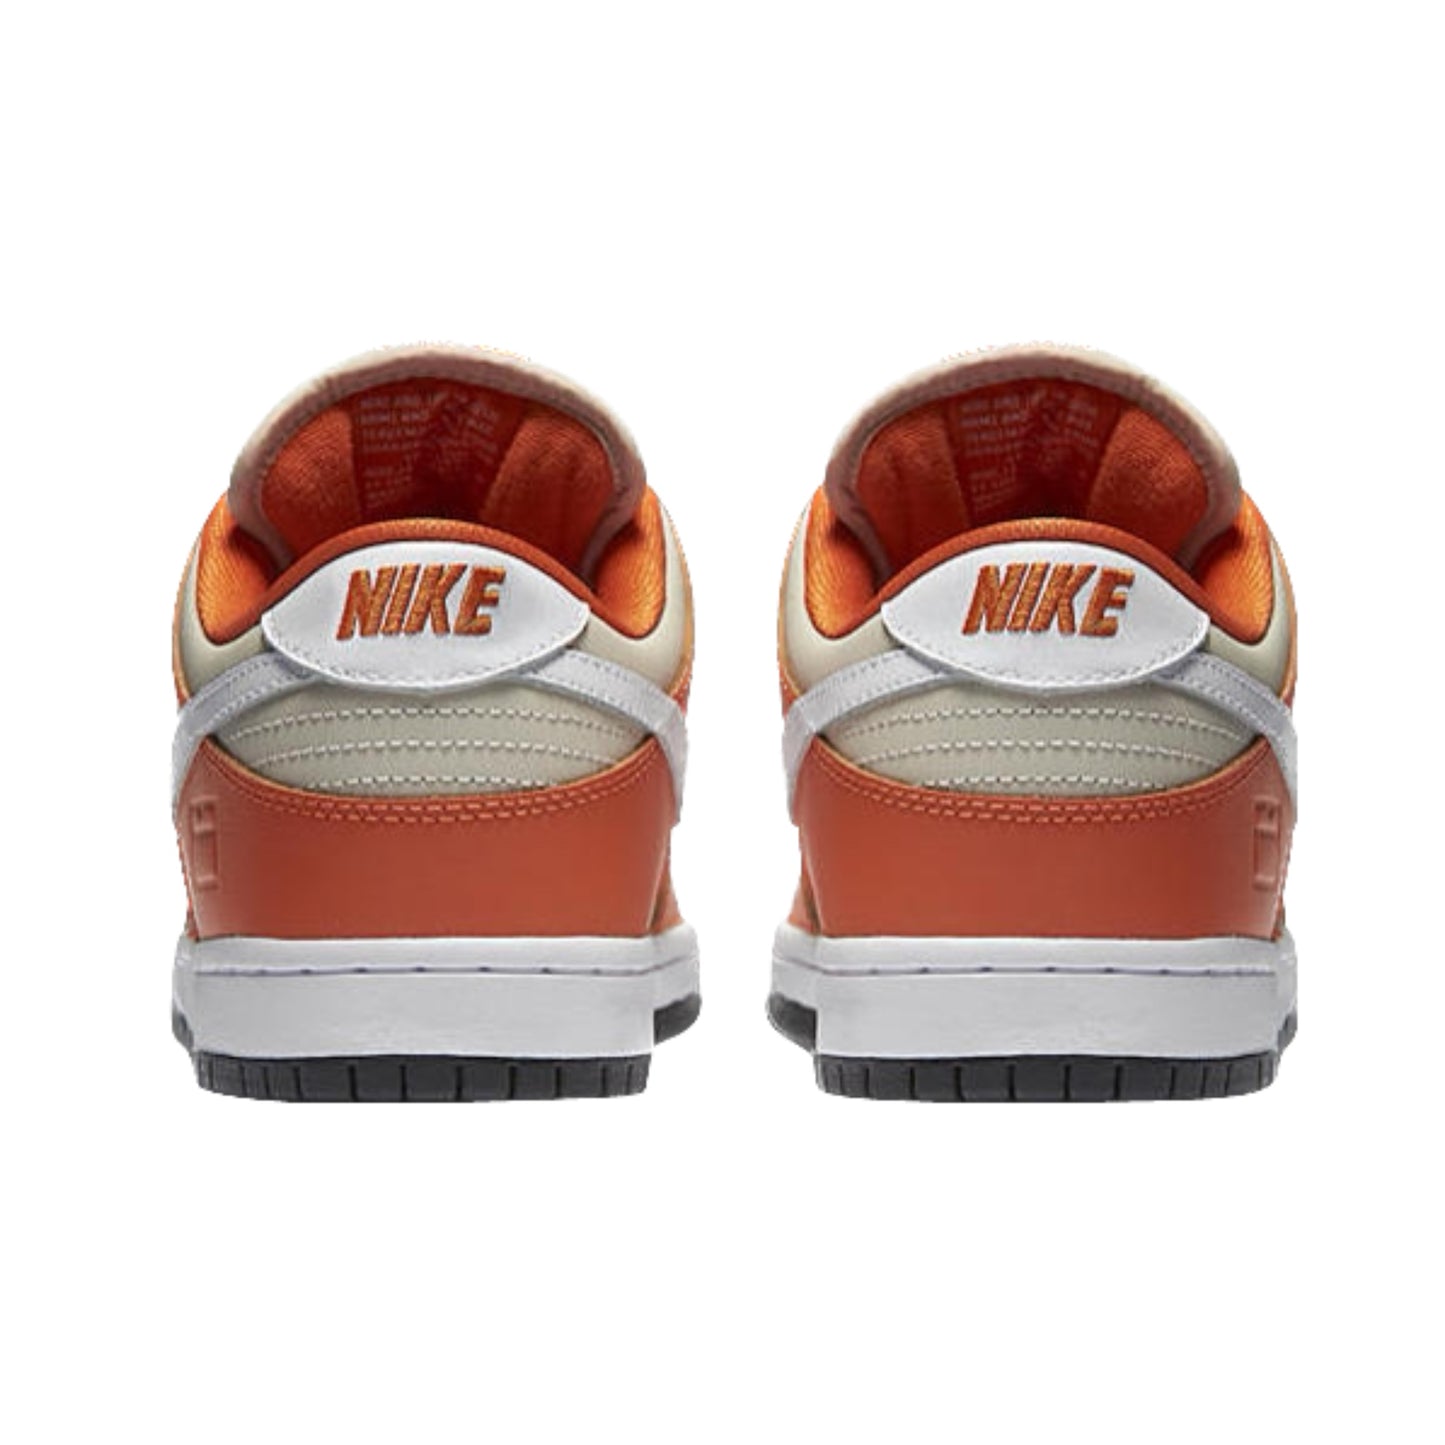 Nike Dunk Low Premium SB Safety Orange (2003)